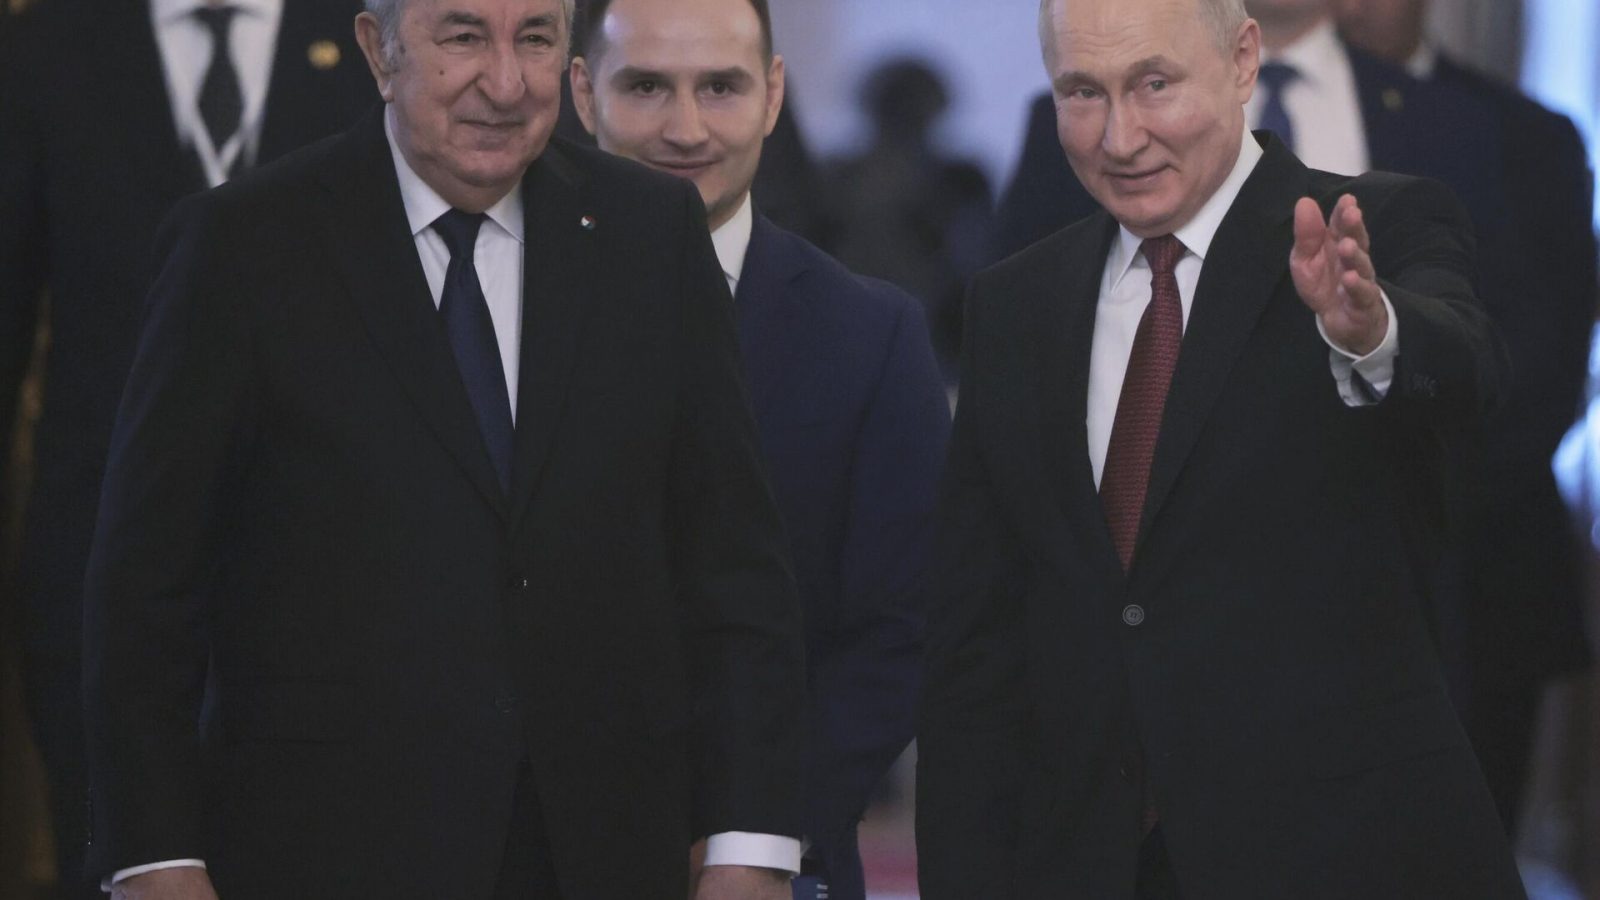 بوتين وتبون يوقعان “إعلان الشراكة العميقة” بين روسيا والجزائر